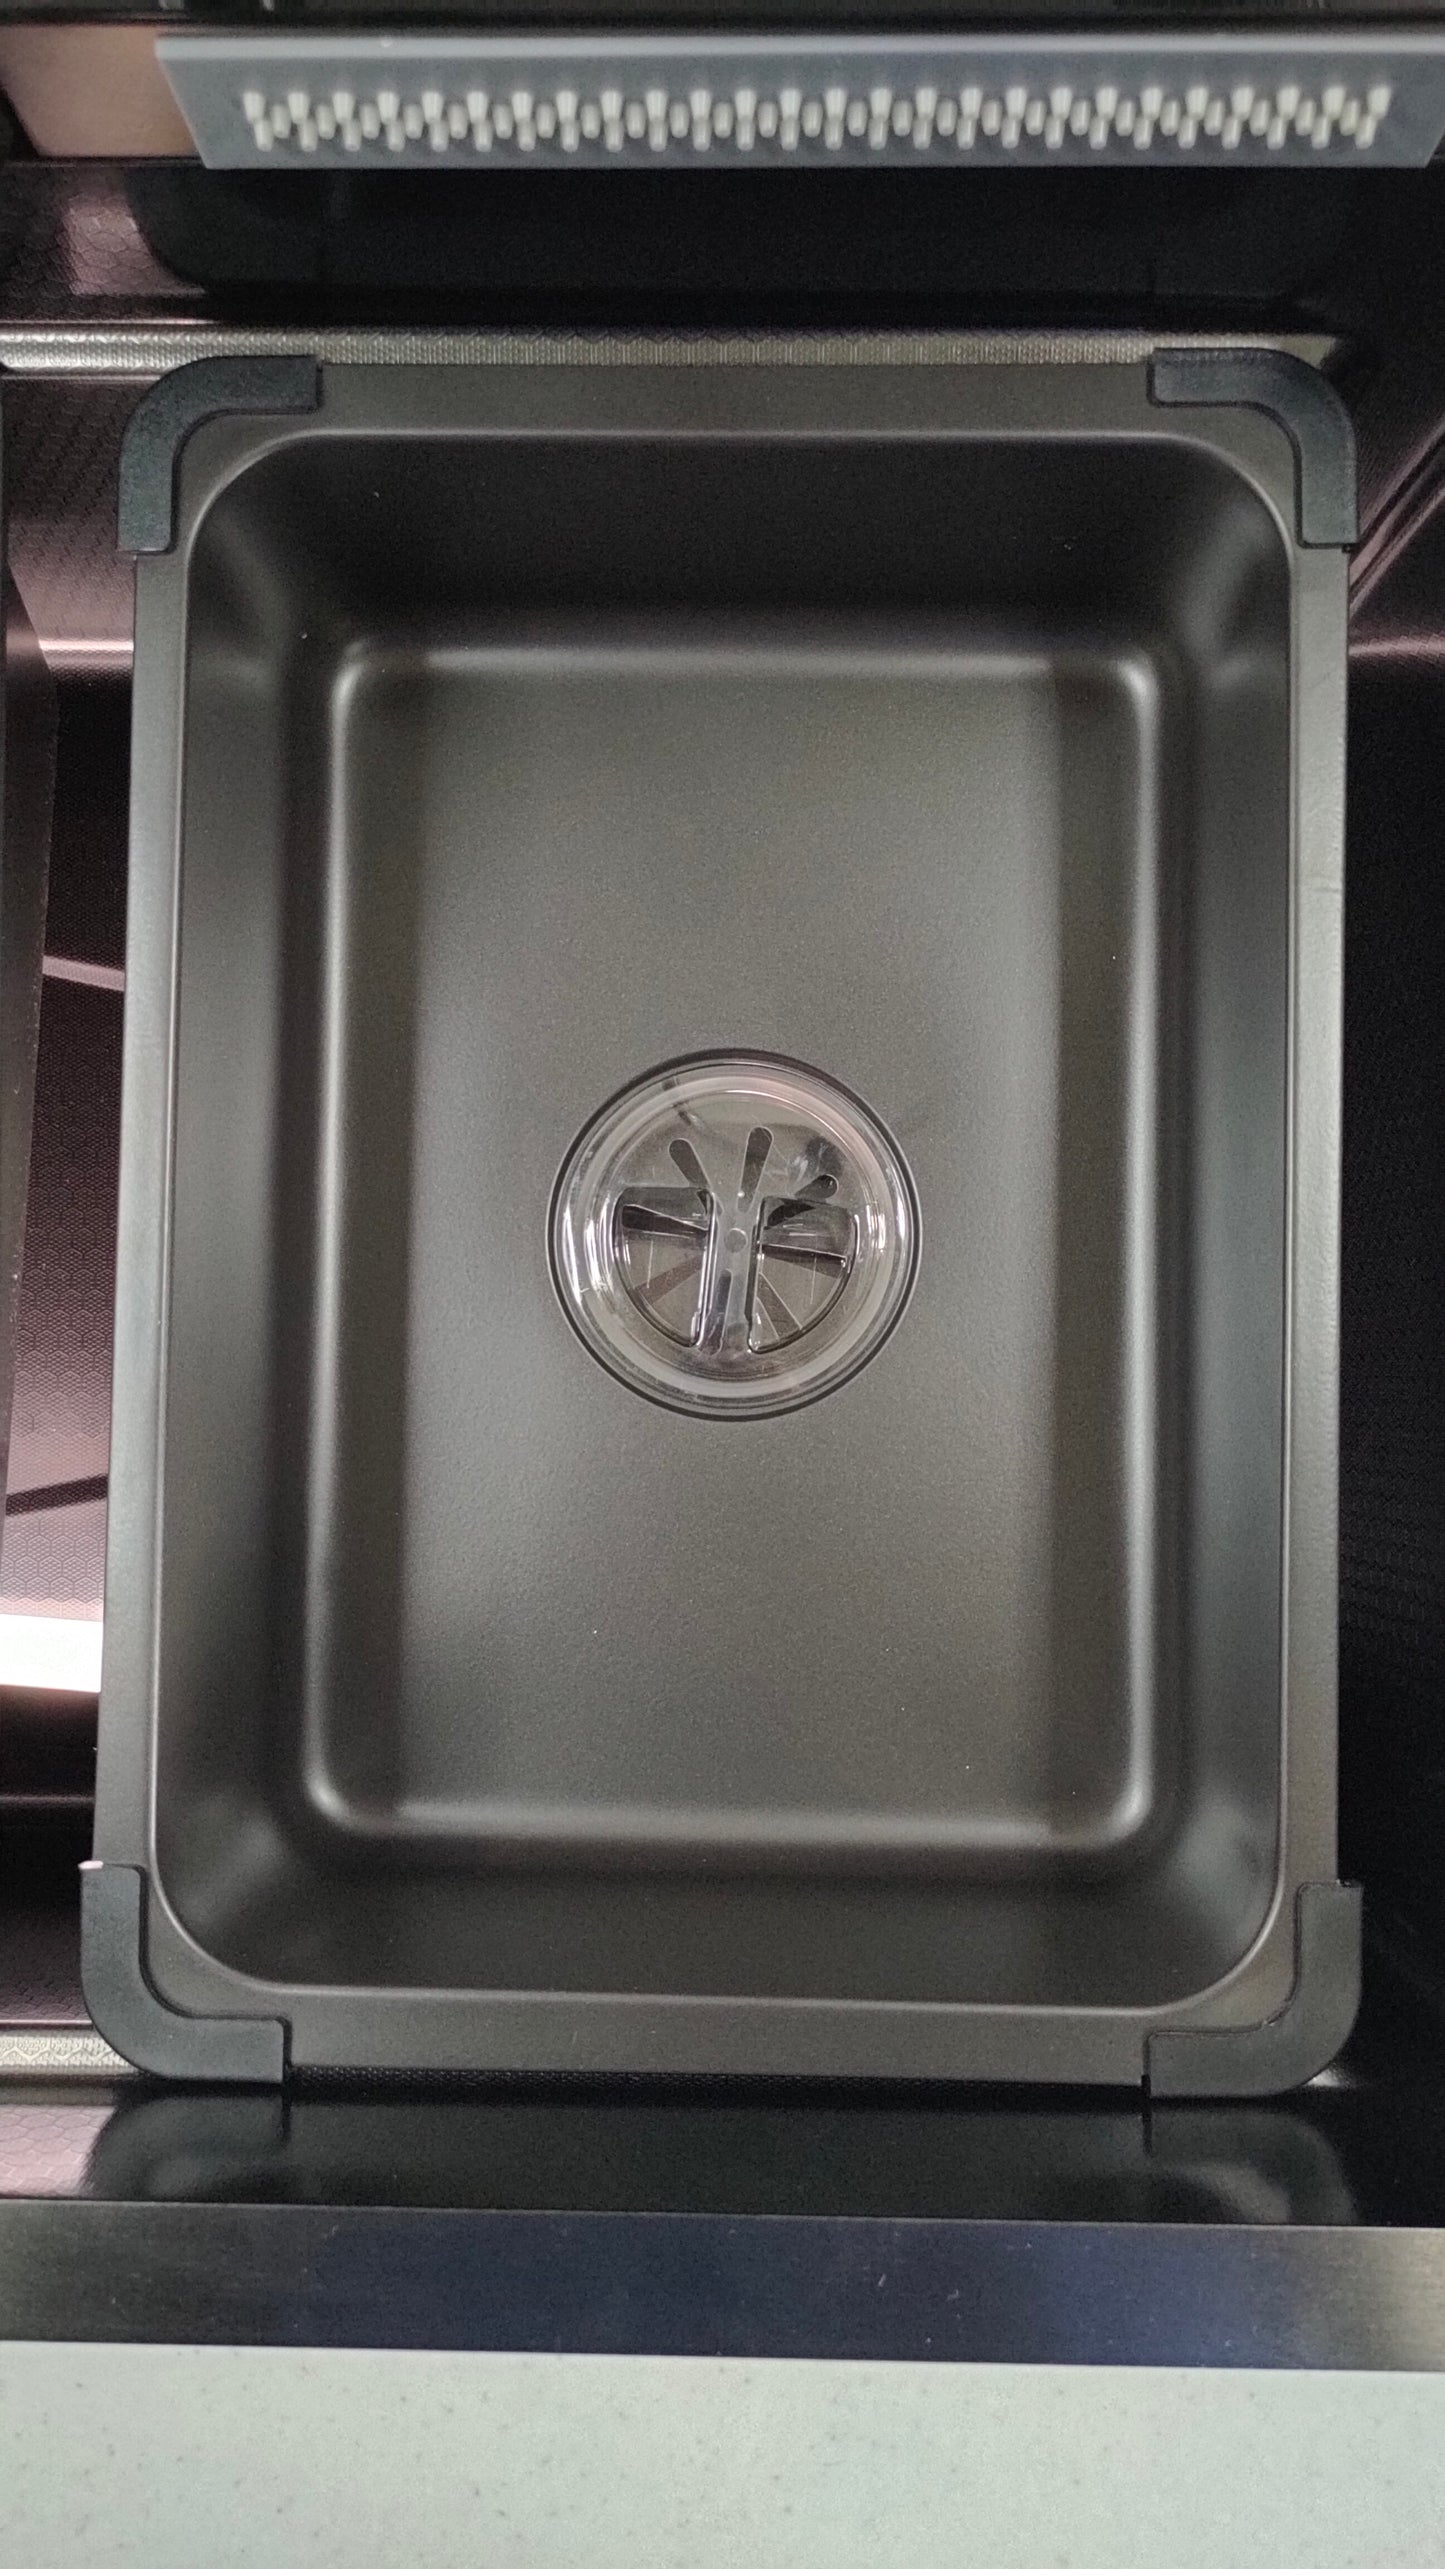 Мултифункционална мивка за кухня | Тетра Синк | 6NBS30475TS | Многофункционална мивка за кухня с дълбоко корито и висококачествена смесителна система водопад